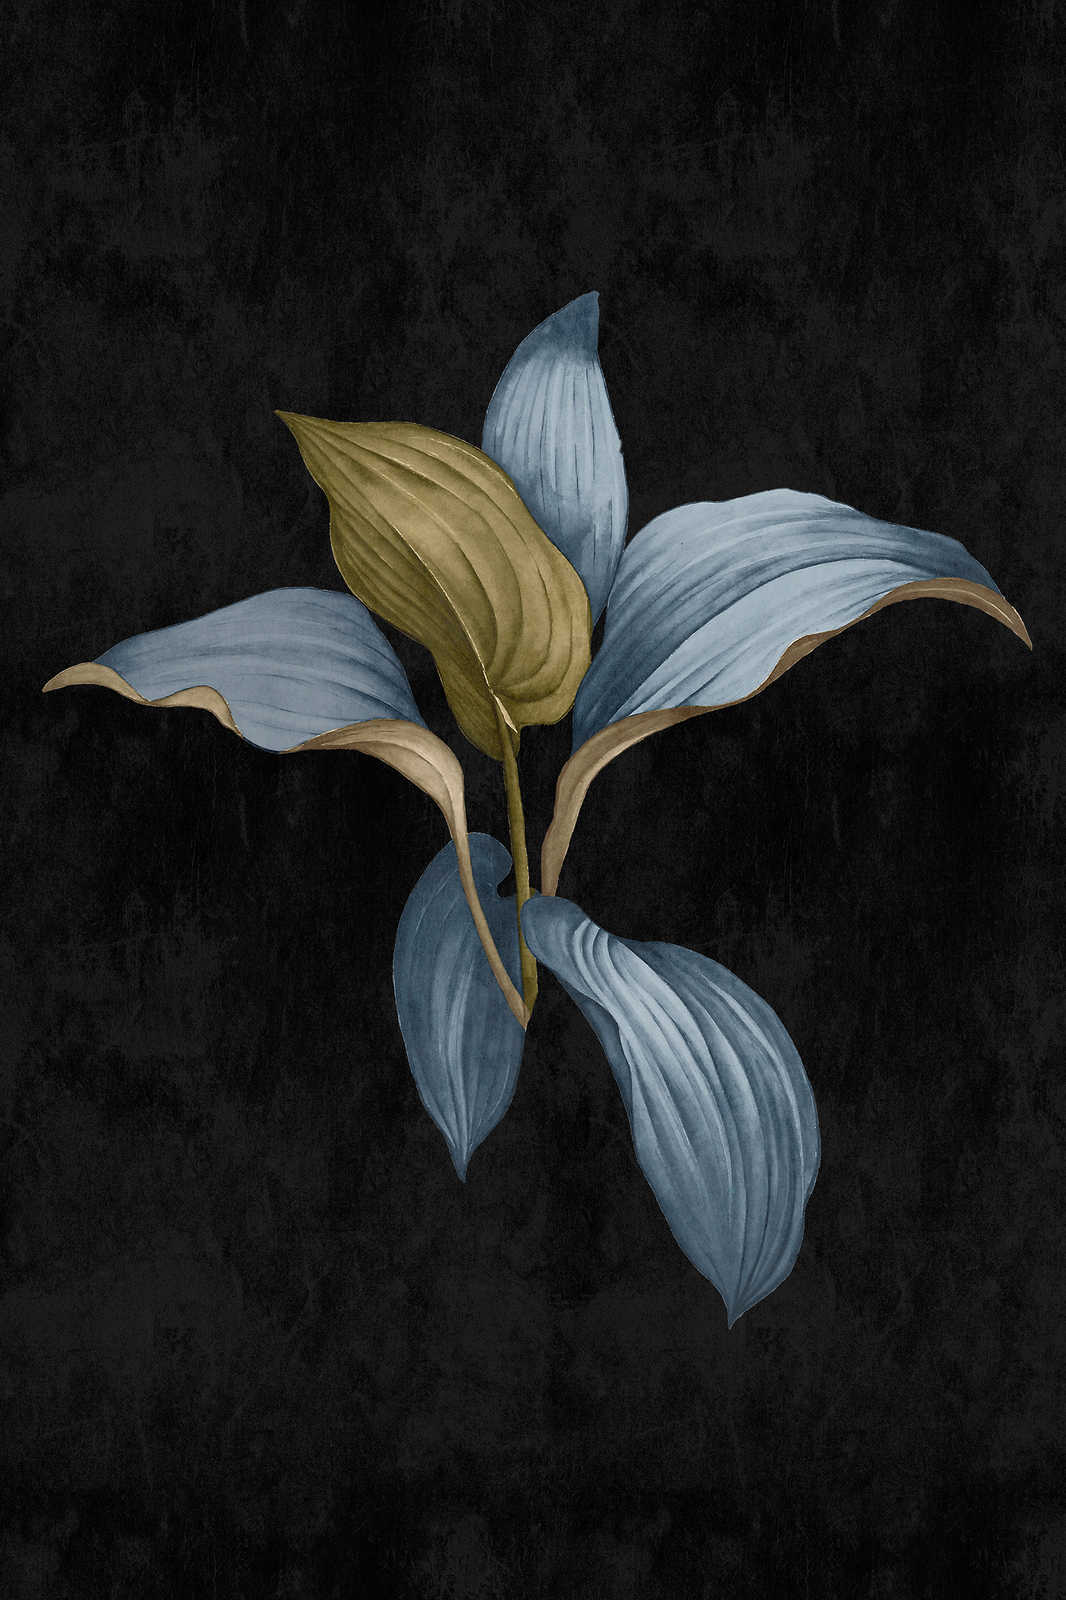             Fiji 3 - Donker canvas schilderij Botanisch ontwerp in blauw & groen - 0.80 m x 1.20 m
        